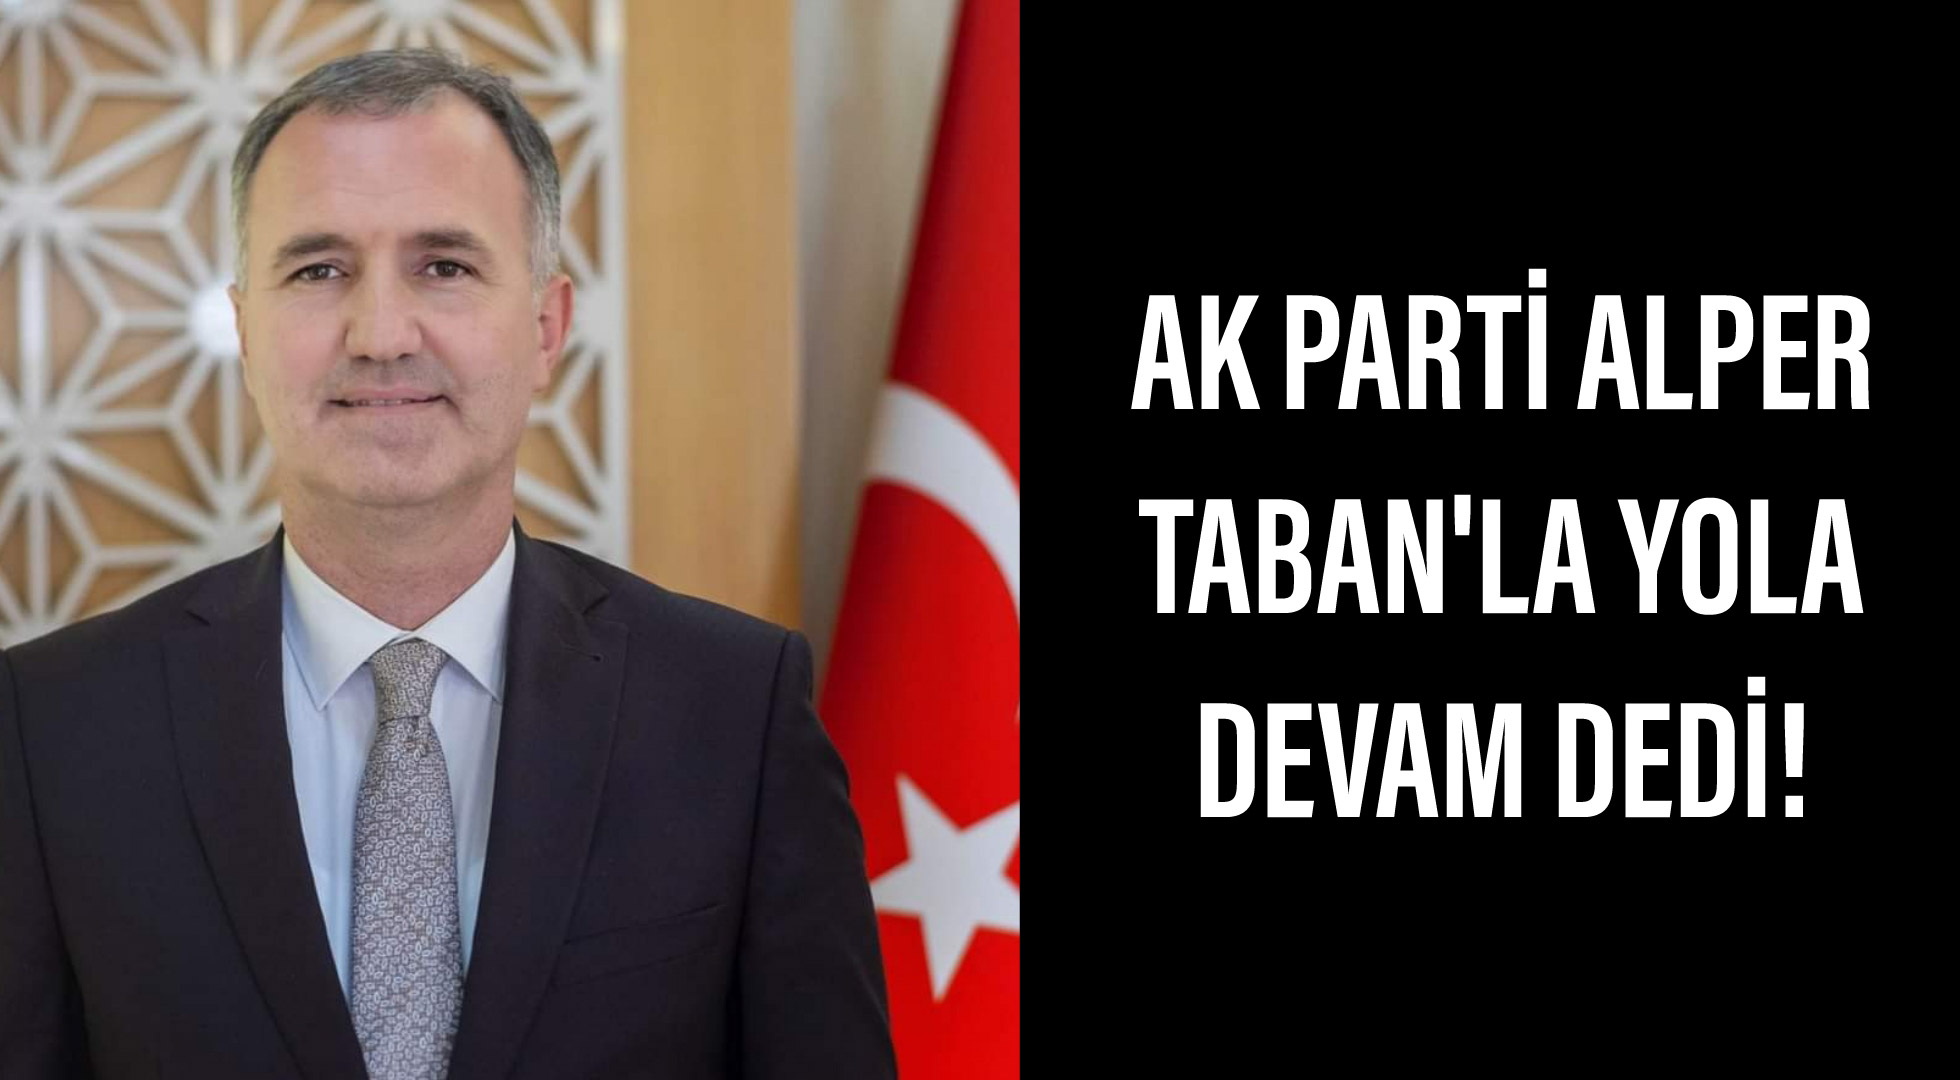 AK Parti Alper Taban